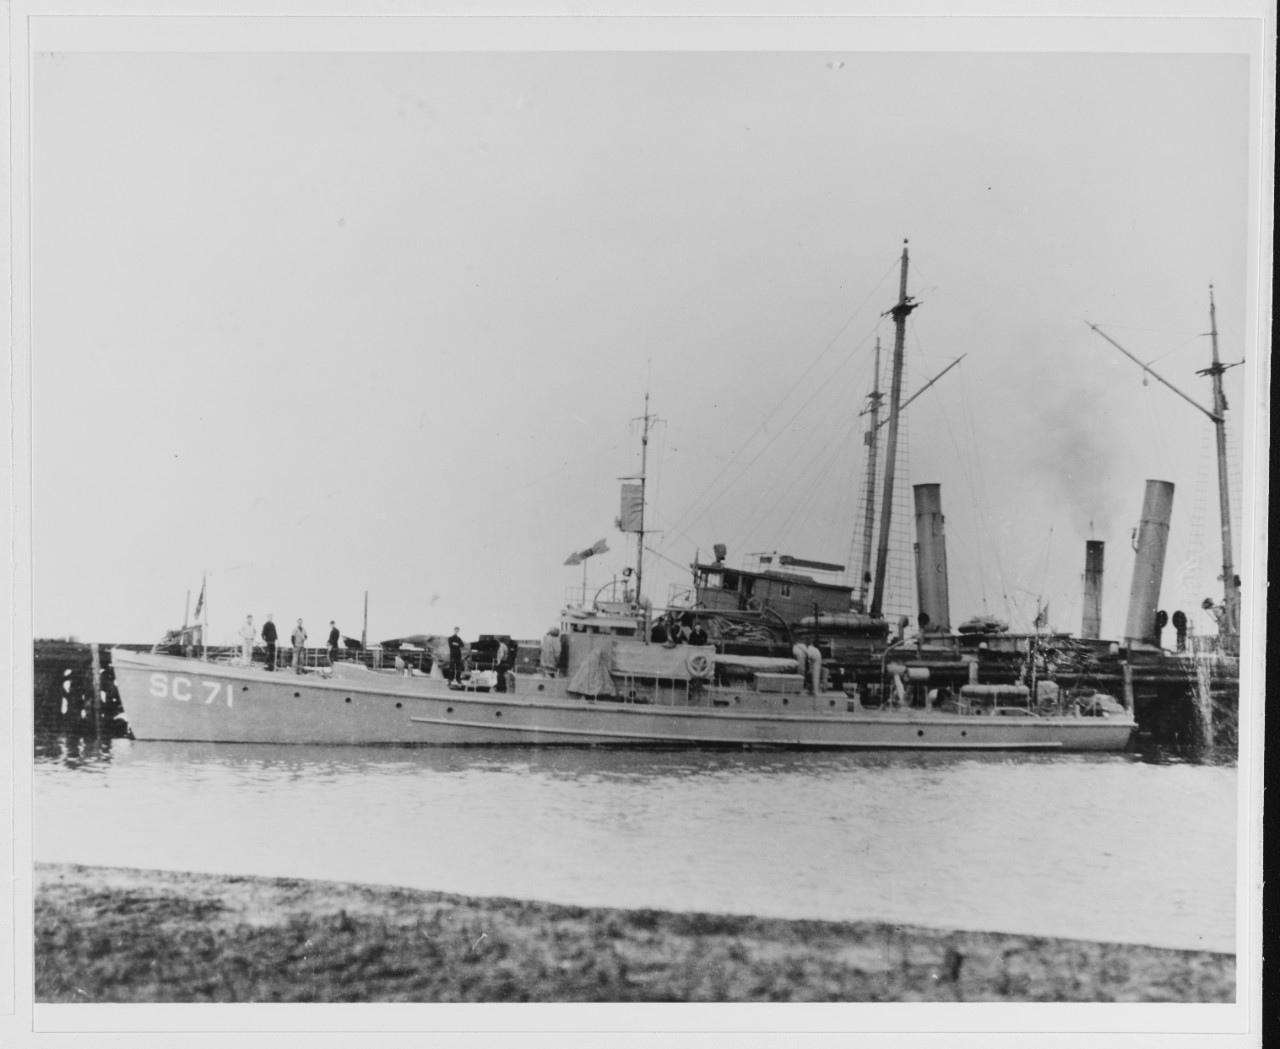 USS SC-71 (1918-1921)